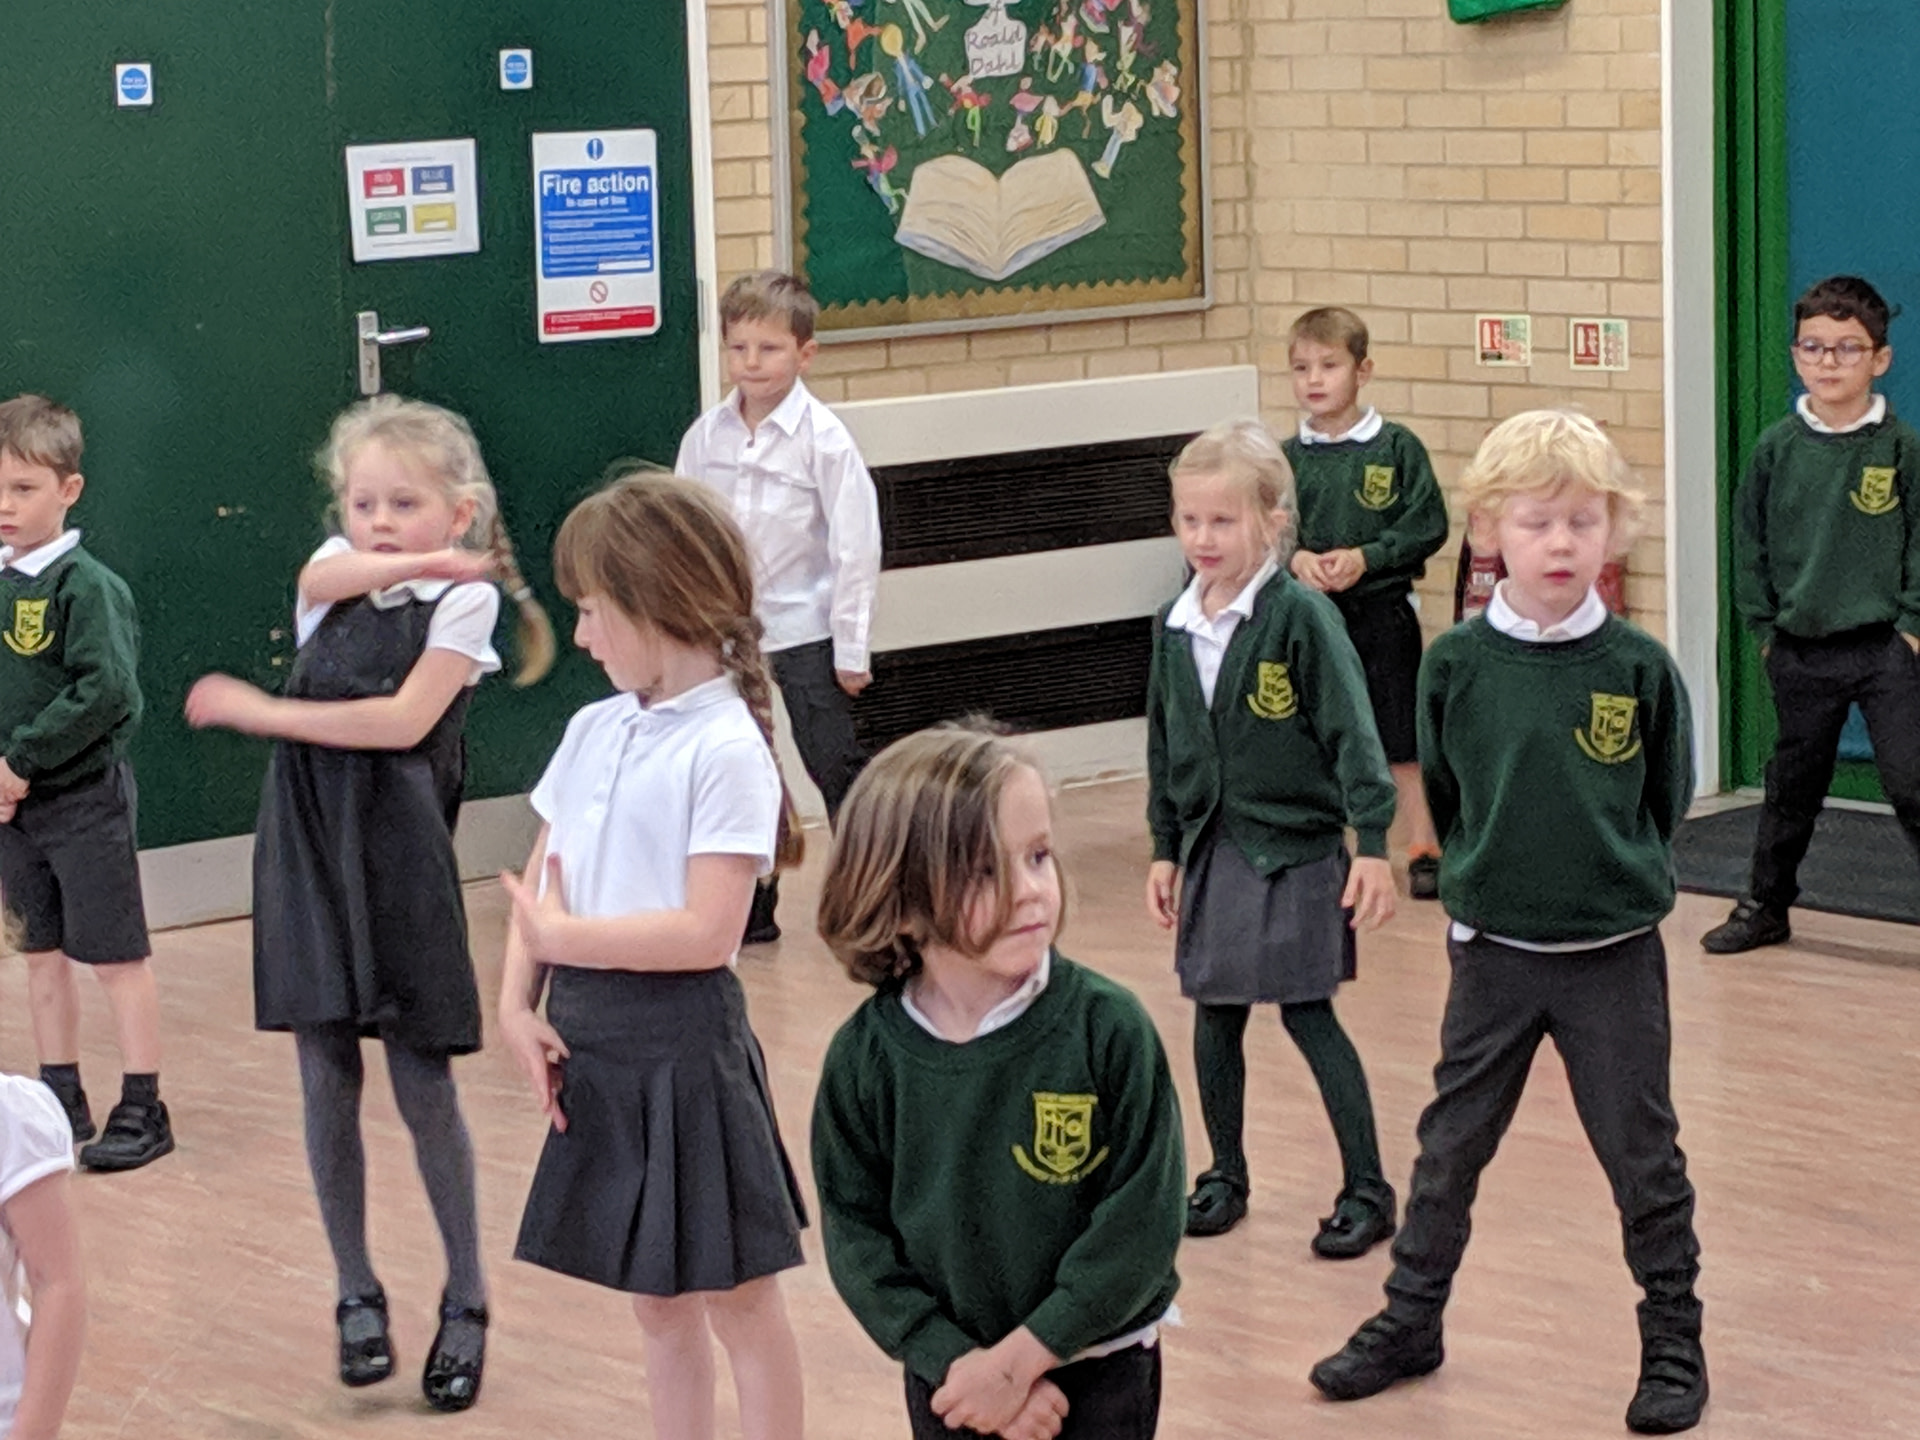 Children dancing in school